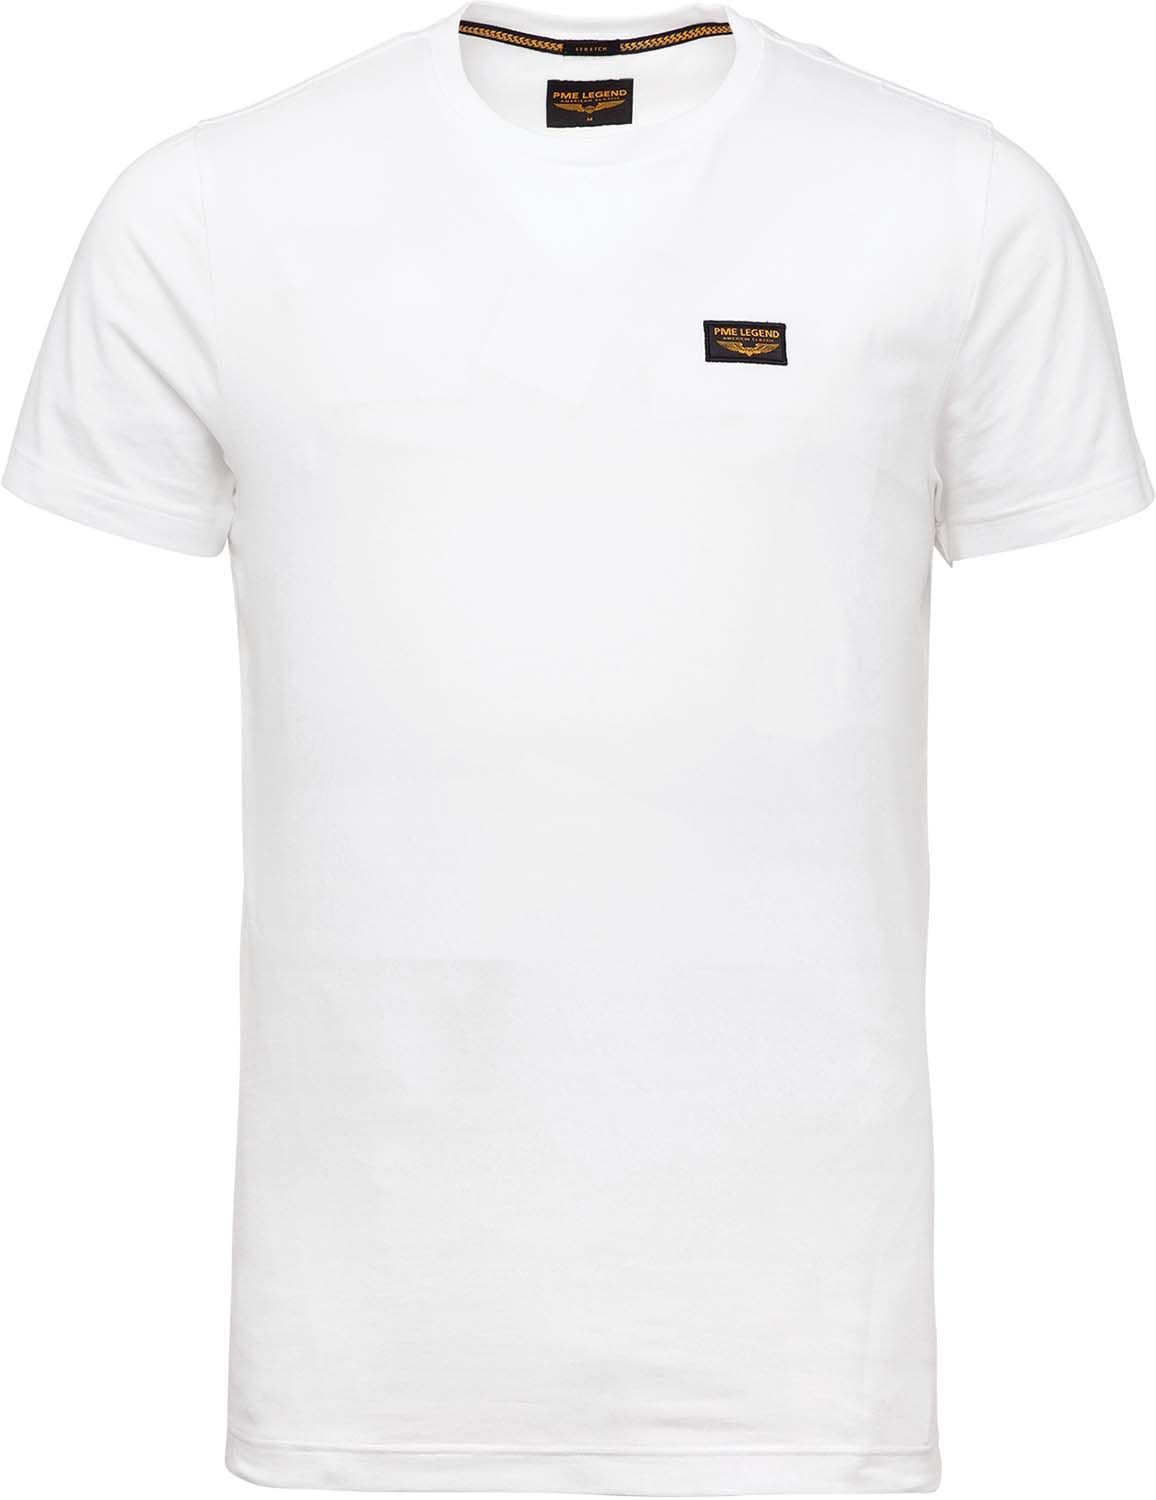 Purper liefde Voorkomen Pme Legend Guyver tee Wit T-shirts | Gratis bezorging - Bomont.nl